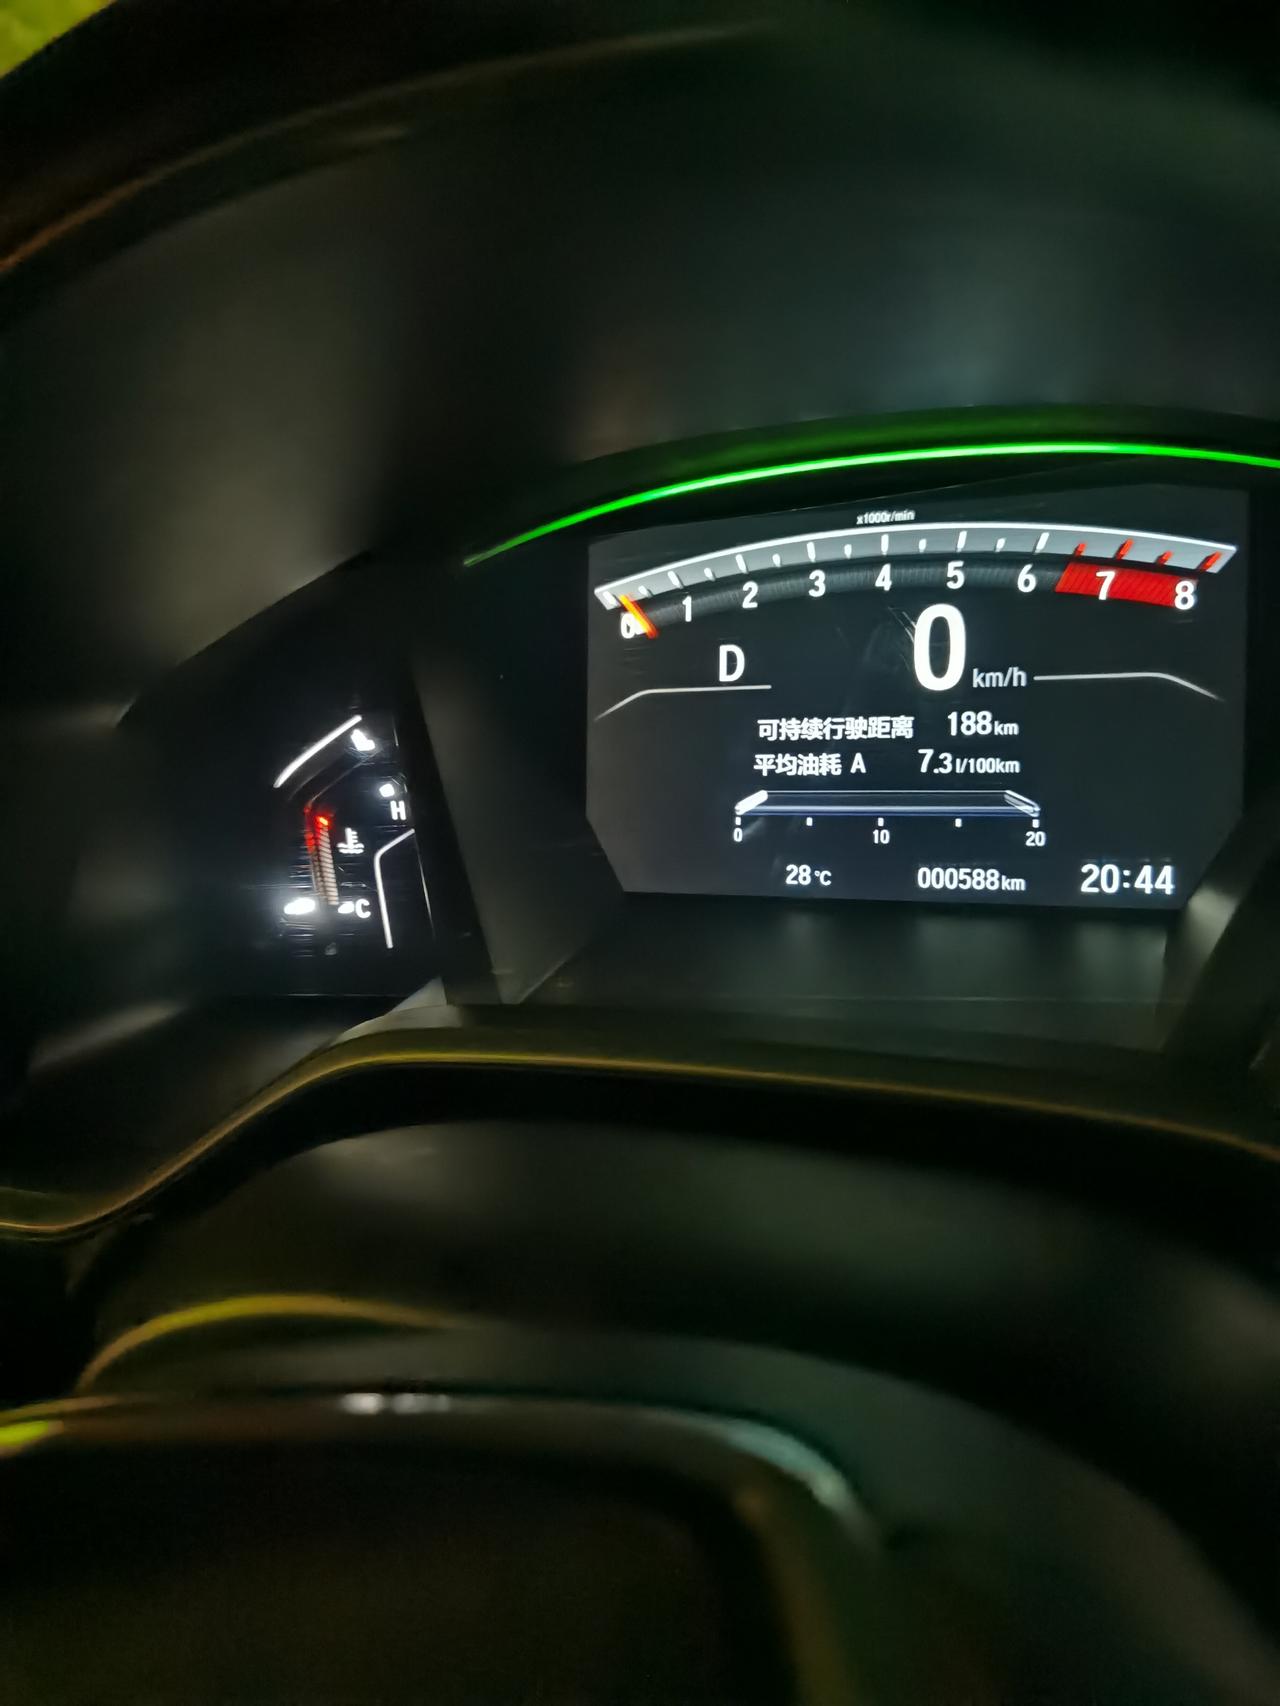 本田CR-V 购车一个月后百公里油耗一直显示7.3升不动，是不是什么坏了